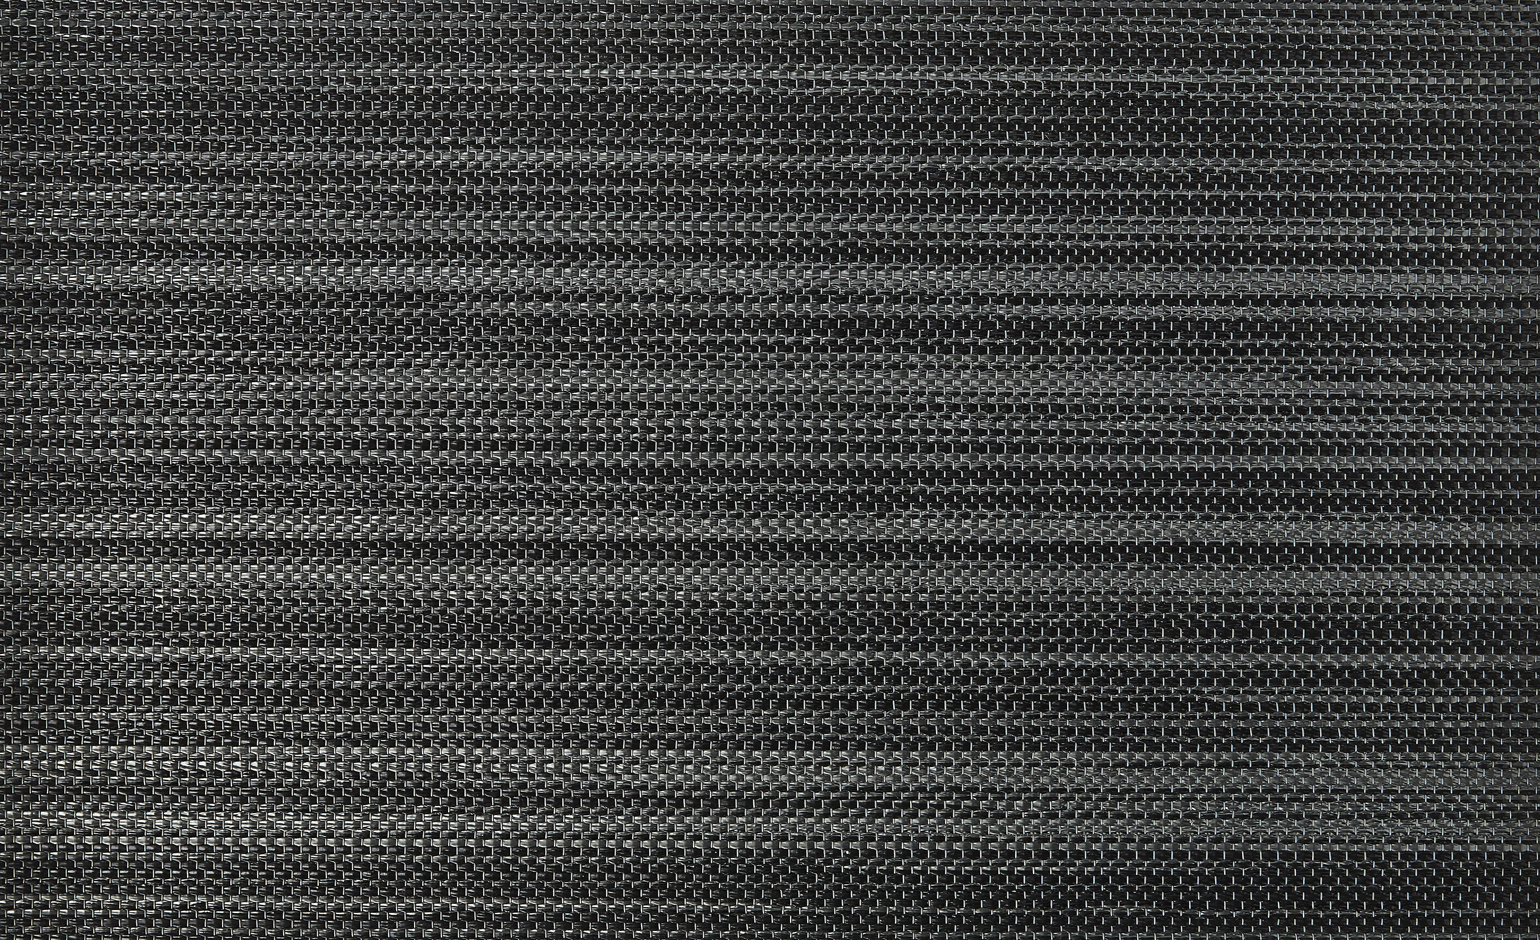 Sol vinyle rouleau METALLIC LOOK , Textile fibre tissée, noir, rouleau 2.00 m